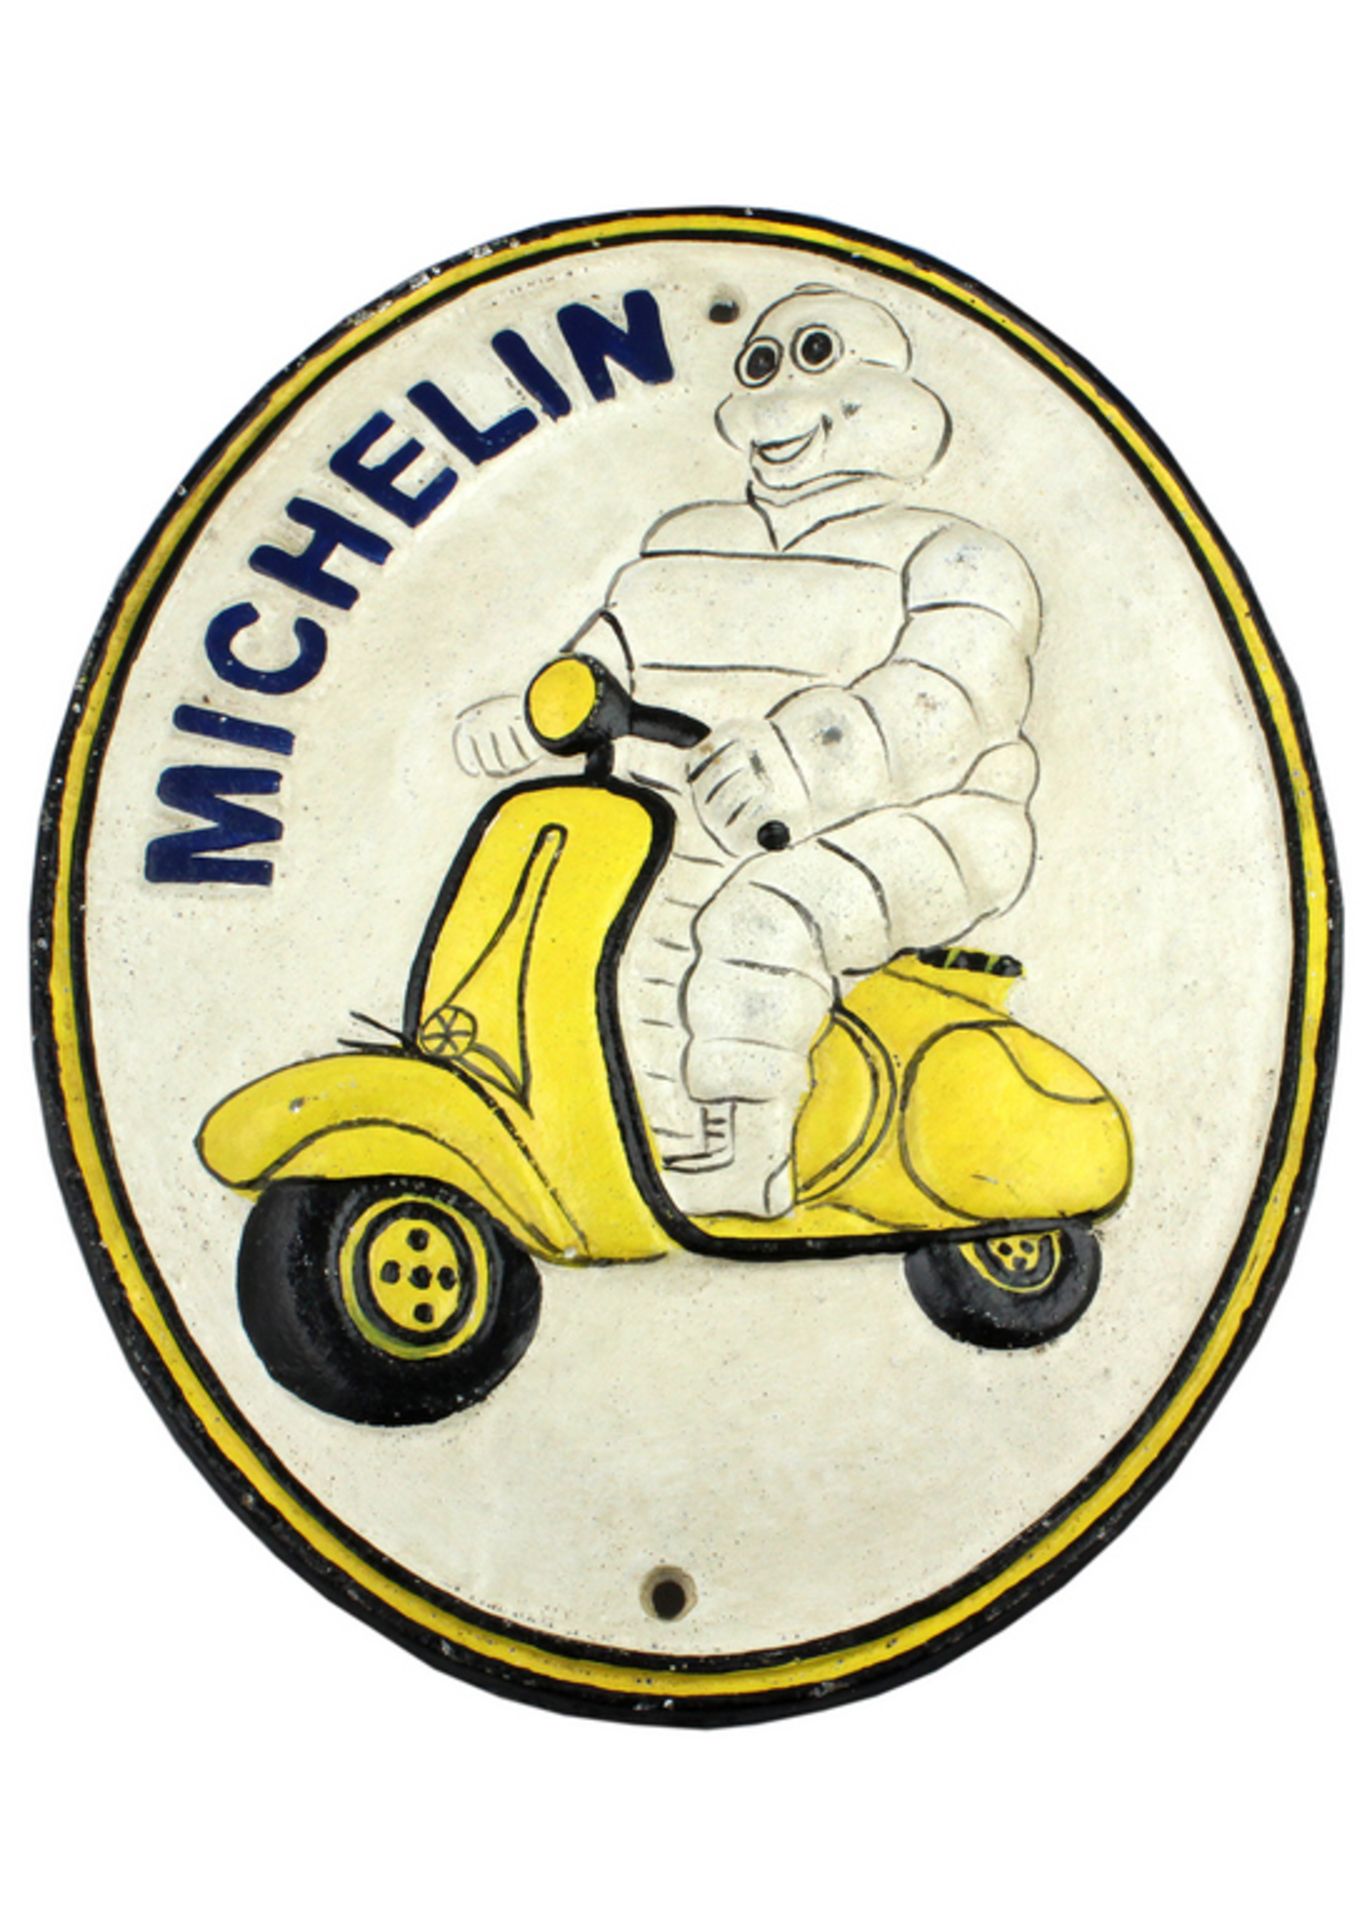 Michelin Man on his Vespa.